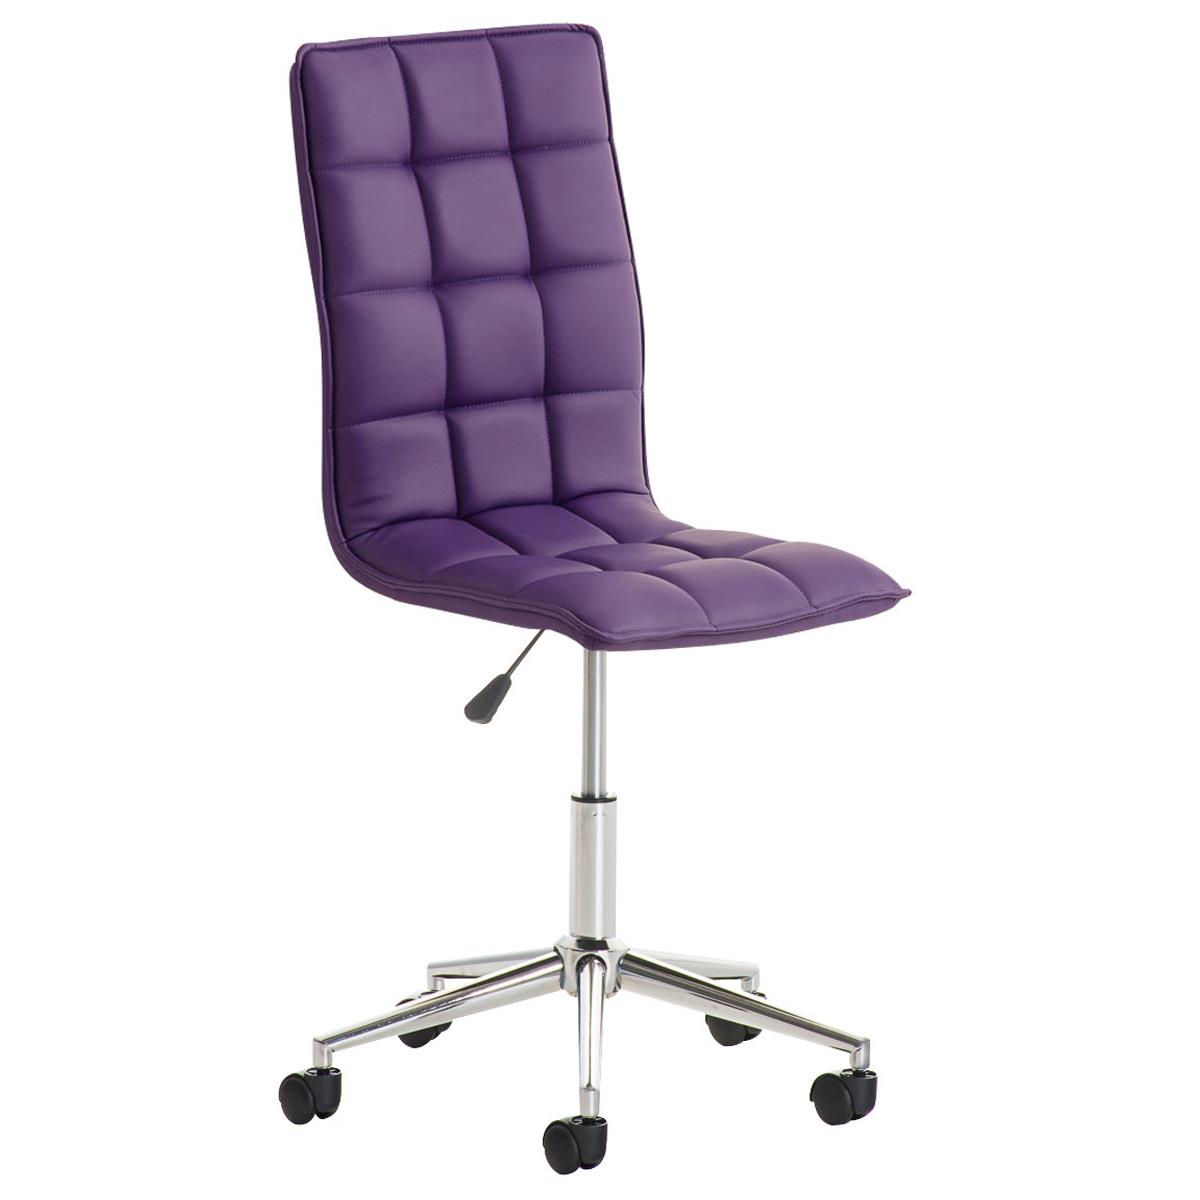 Chaise de bureau BULGARI, Design Sublime, Piétement Métallique, revêtement en Cuir, Violet